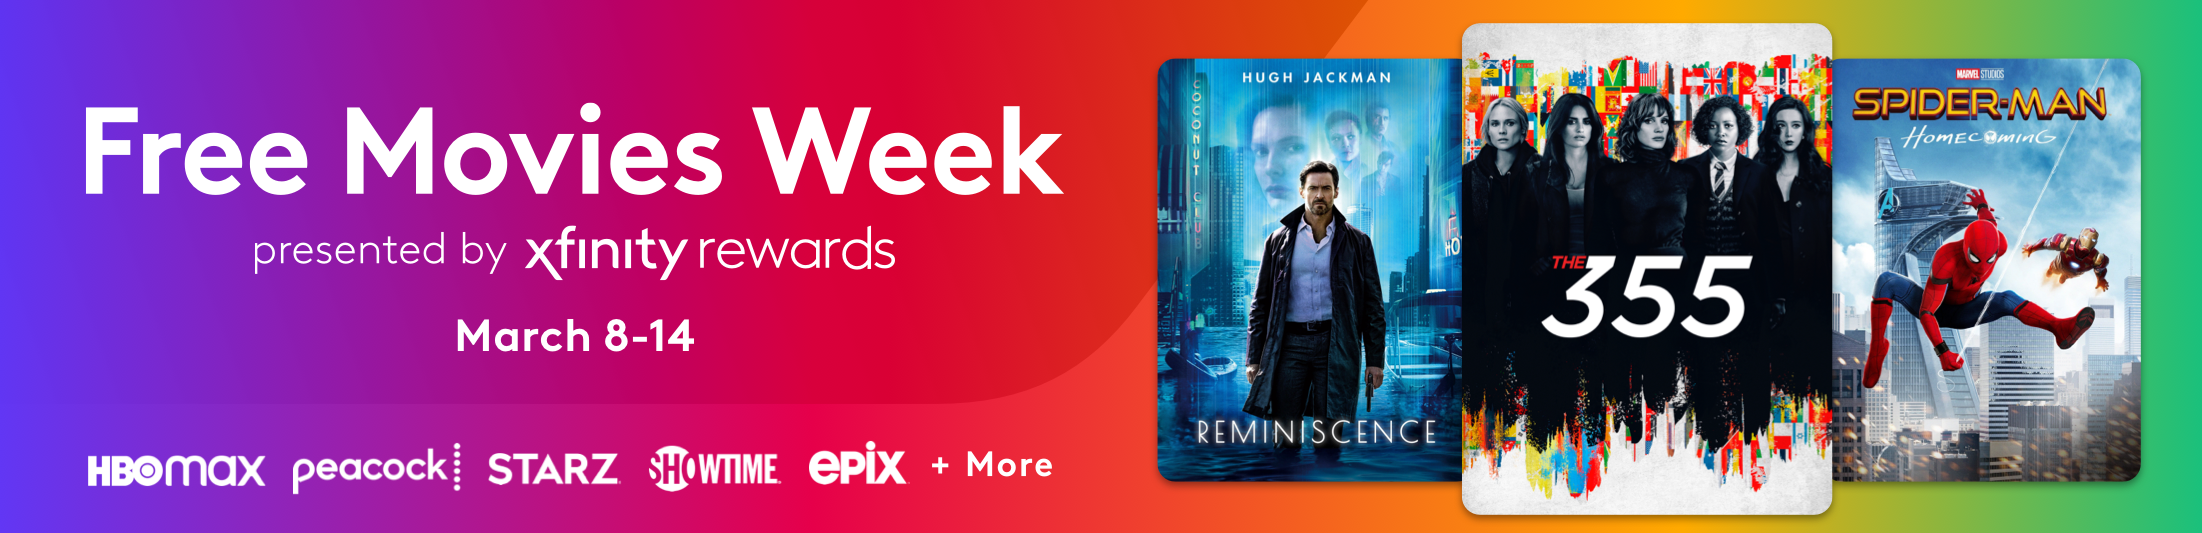 Free Movies Week on Xfinity Happening 3/8 - 3/14